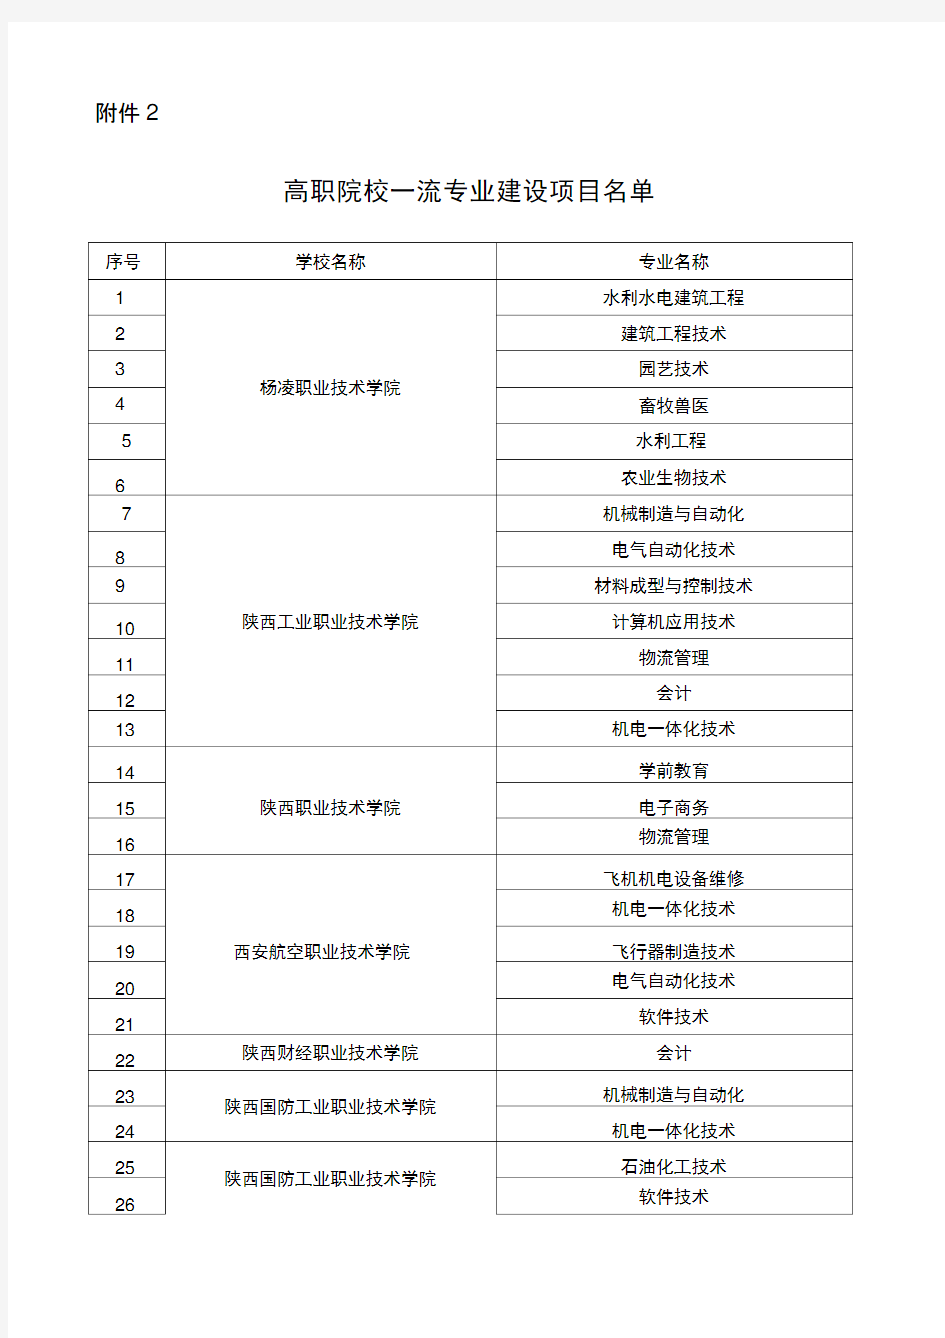 陕西省高职院校一流专业建设项目名单